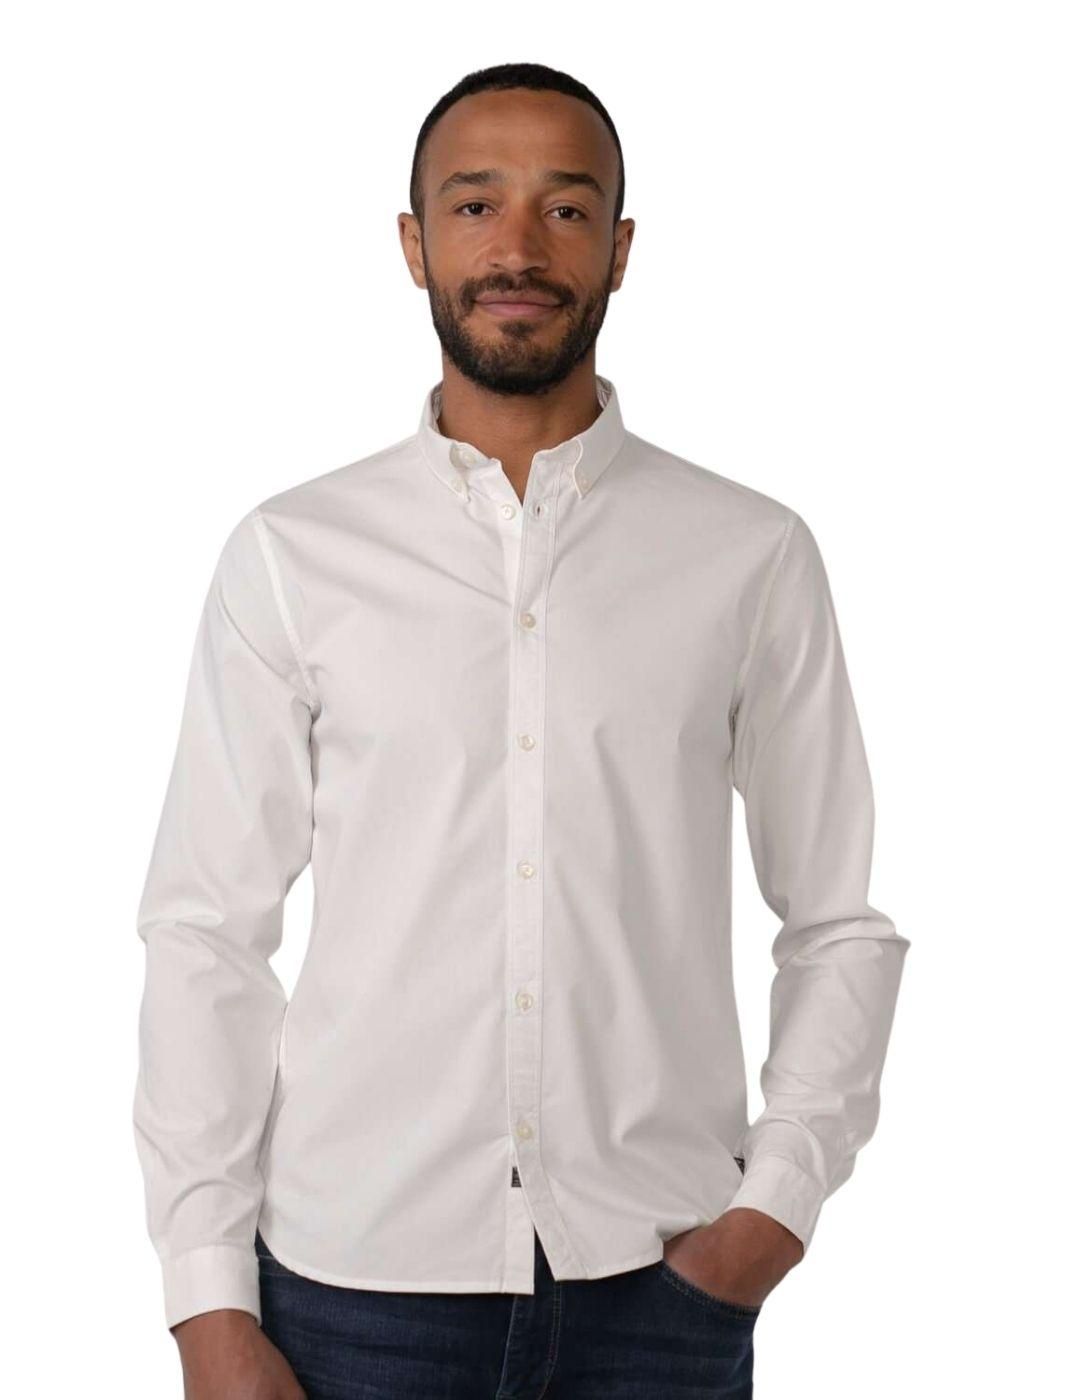 Camisa manga larga Petrol Industries Blanco - Bicos de Fío